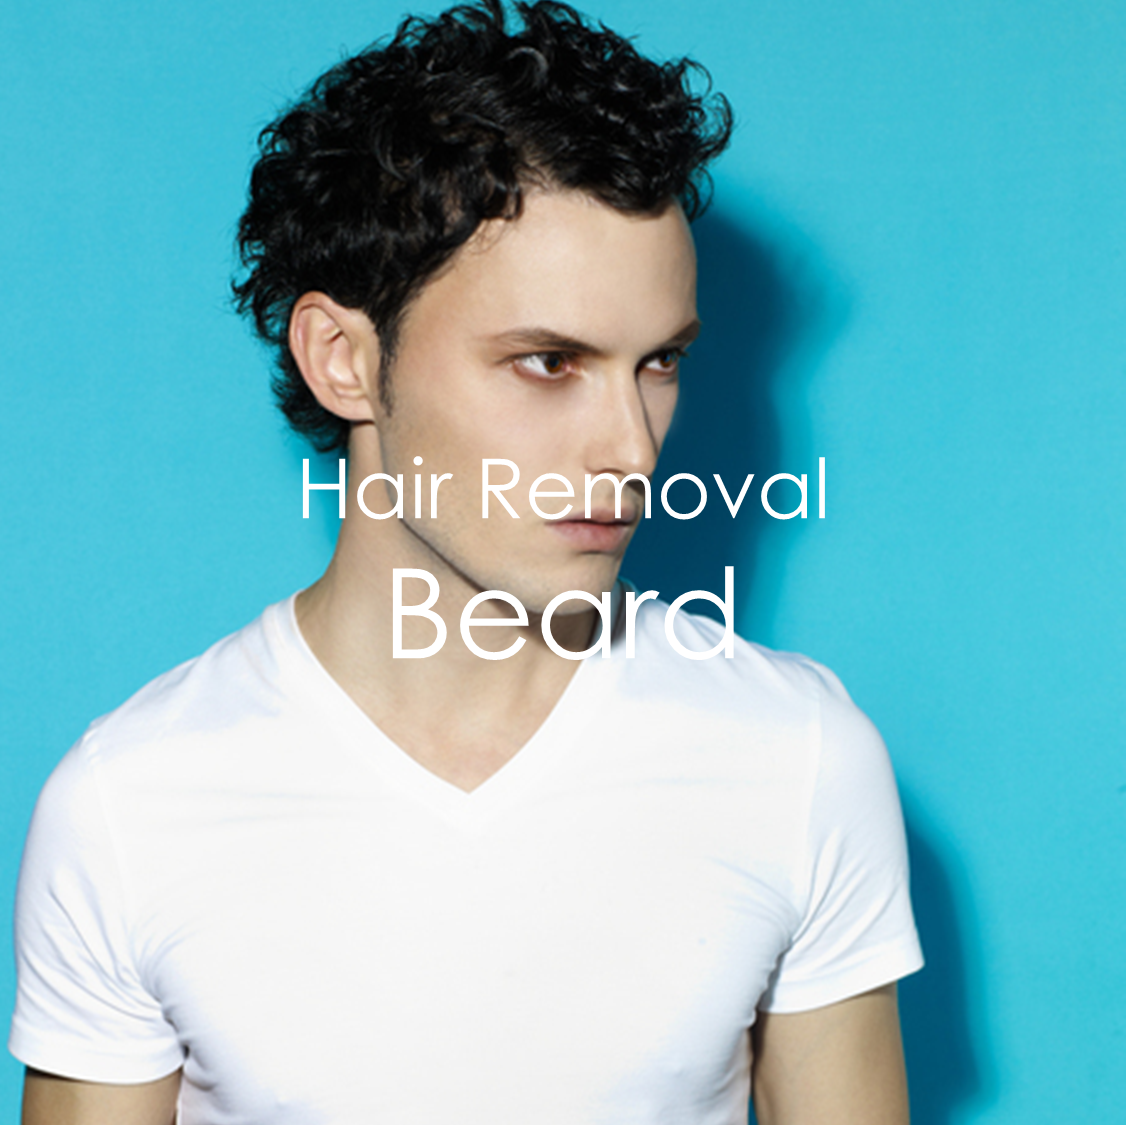 Hair Removal - Beard for Men